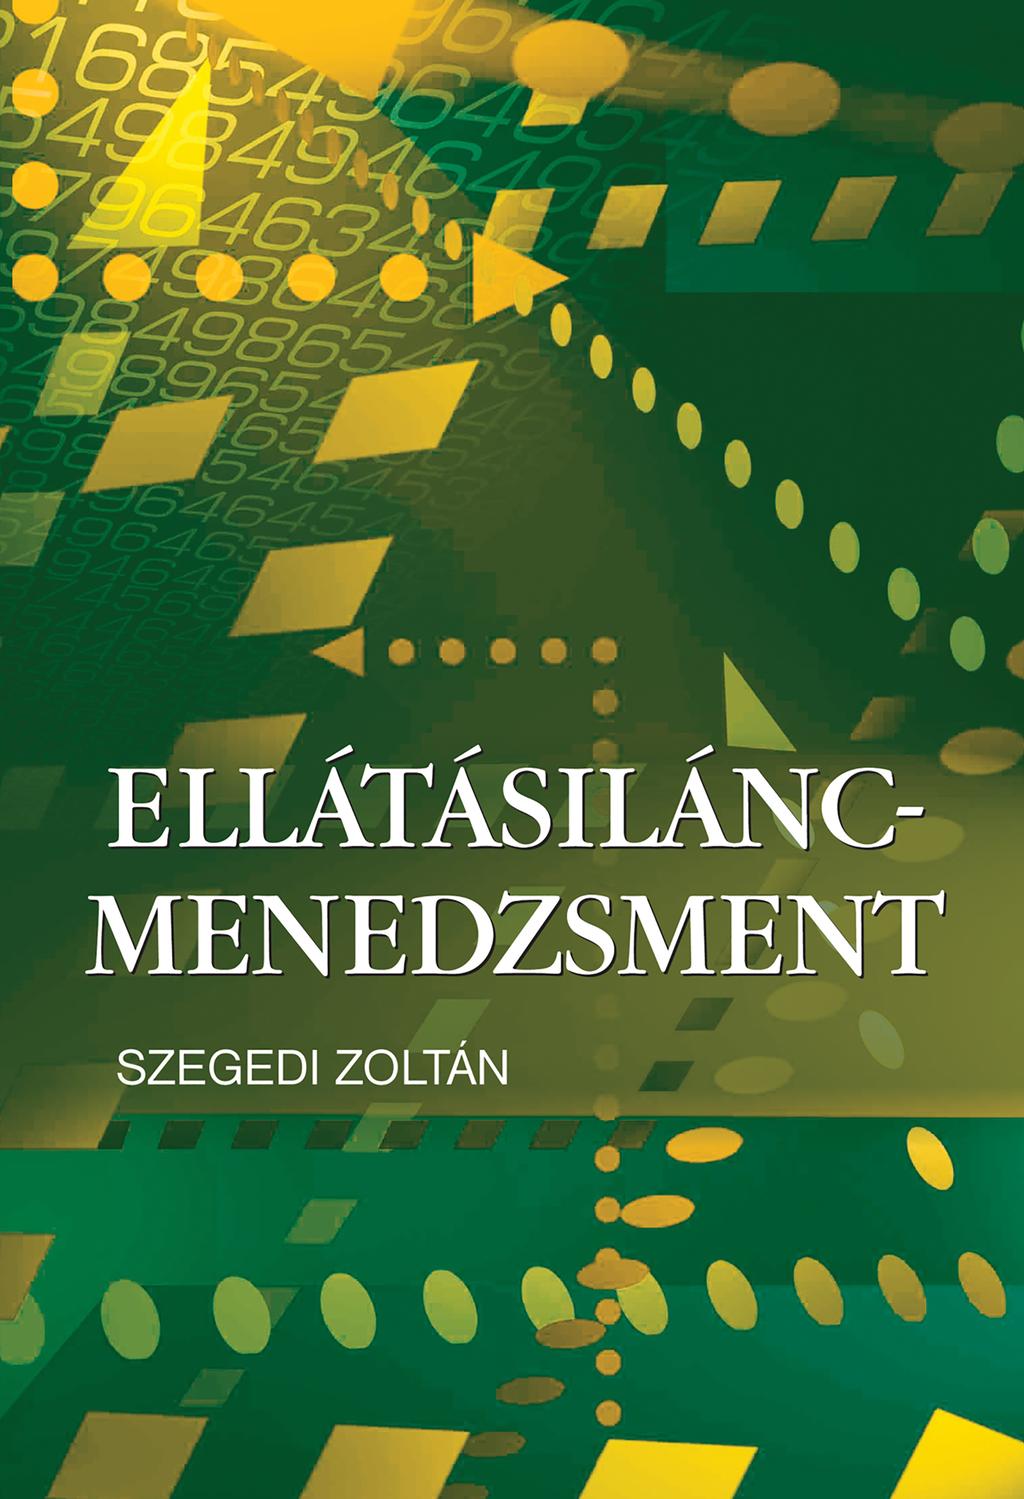 SZEGEDI ZOLTÁN ELLÁTÁSILÁNC- MENEDZSMENT - PDF Free Download